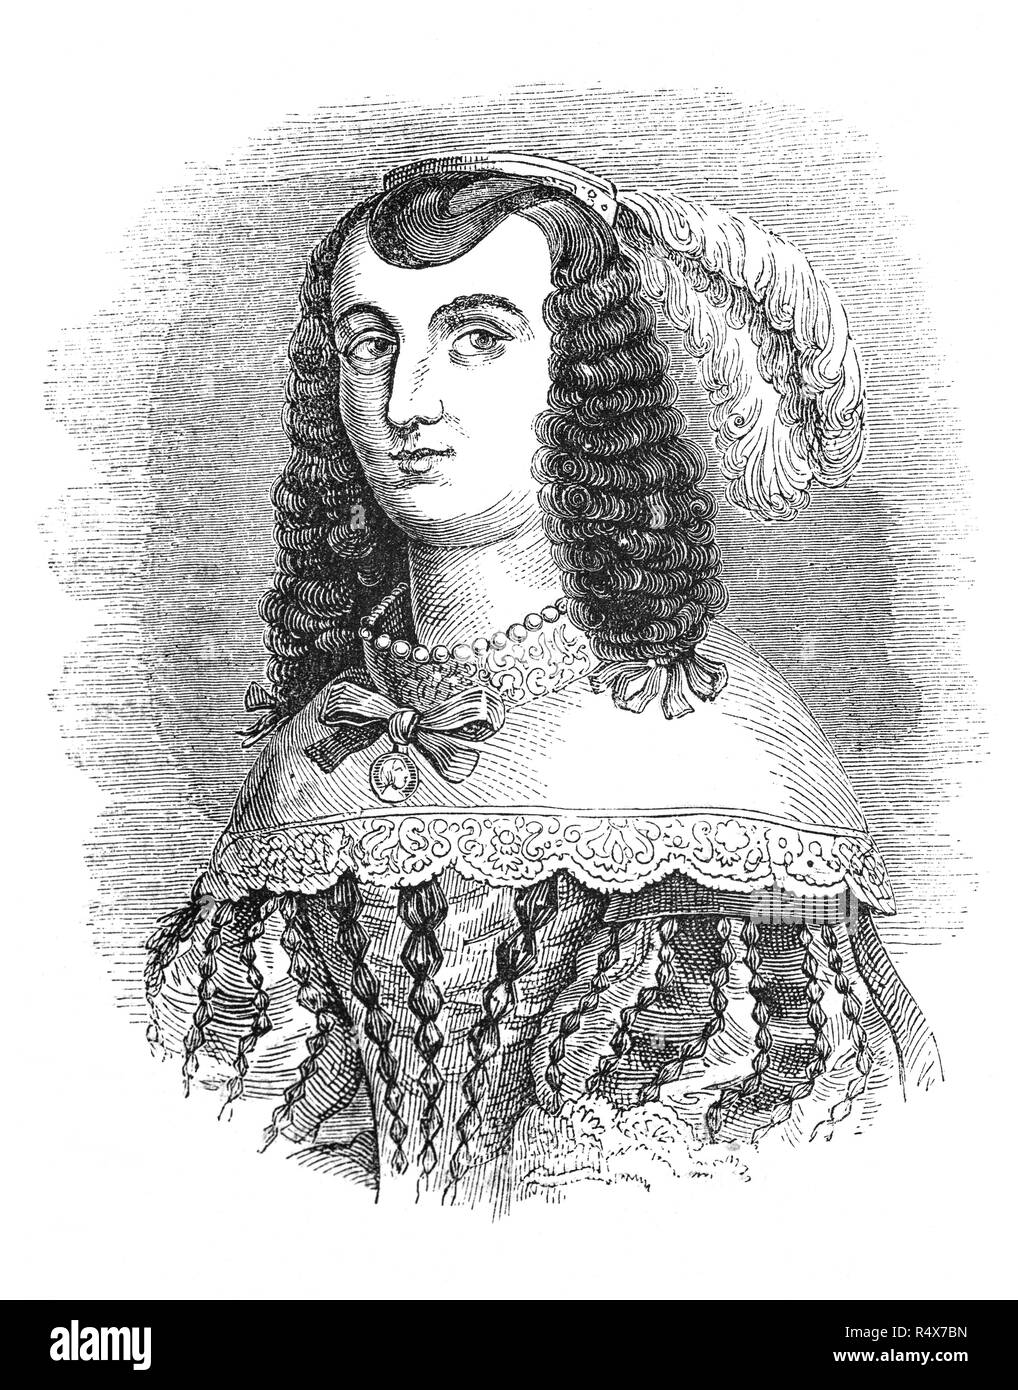 Catherine de Bragance (1638-1705) fut reine consort d'Angleterre, d'Écosse et d'Irlande de 1662 à 1685, comme l'épouse du roi Charles II, mais n'a pas d'héritiers pour le roi, après avoir subi trois fausses couches. Elle était la fille du roi Jean IV, qui devint le premier roi du Portugal à partir de la maison de Bragance en 1640. Toutefois, en raison de sa dévotion à la foi catholique romaine dans laquelle elle avait été soulevée, Catherine était impopulaire en Angleterre, mais est crédité de l'introduction de l'anglais à plateau-d'alcool, qui était alors répandue parmi la noblesse portugaise. Banque D'Images